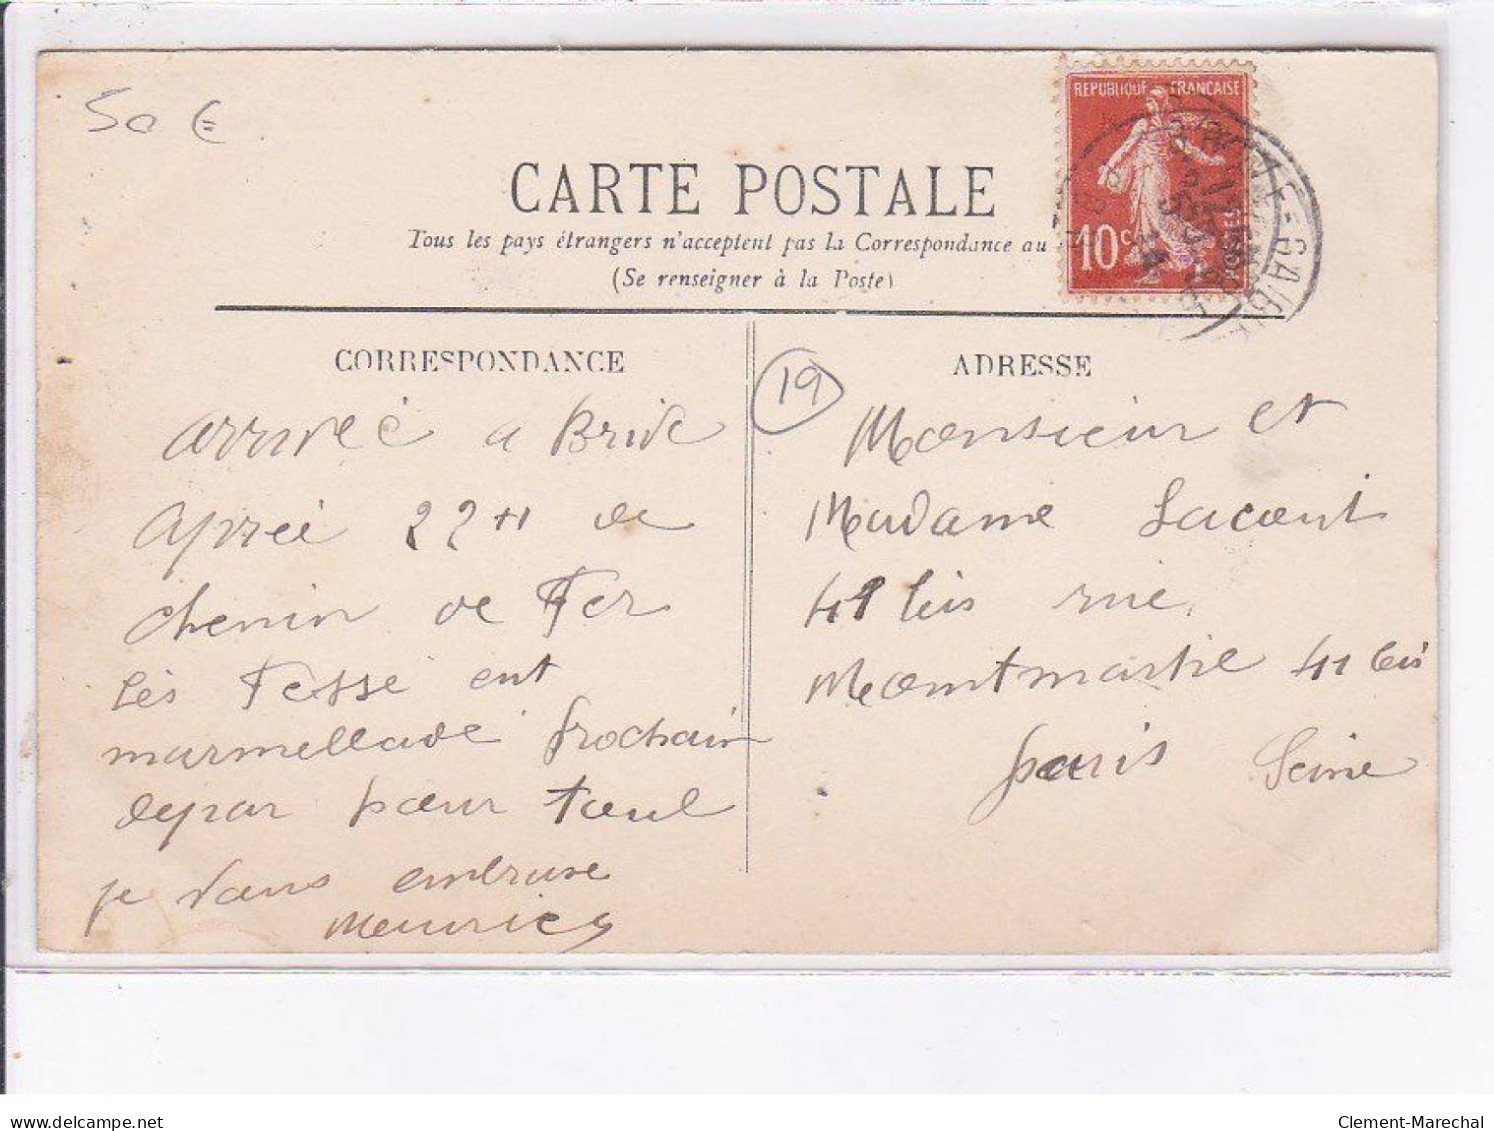 BRIVE: La Digue, Inondation Du 30 Novembre 1910 - Très Bon état - Andere & Zonder Classificatie